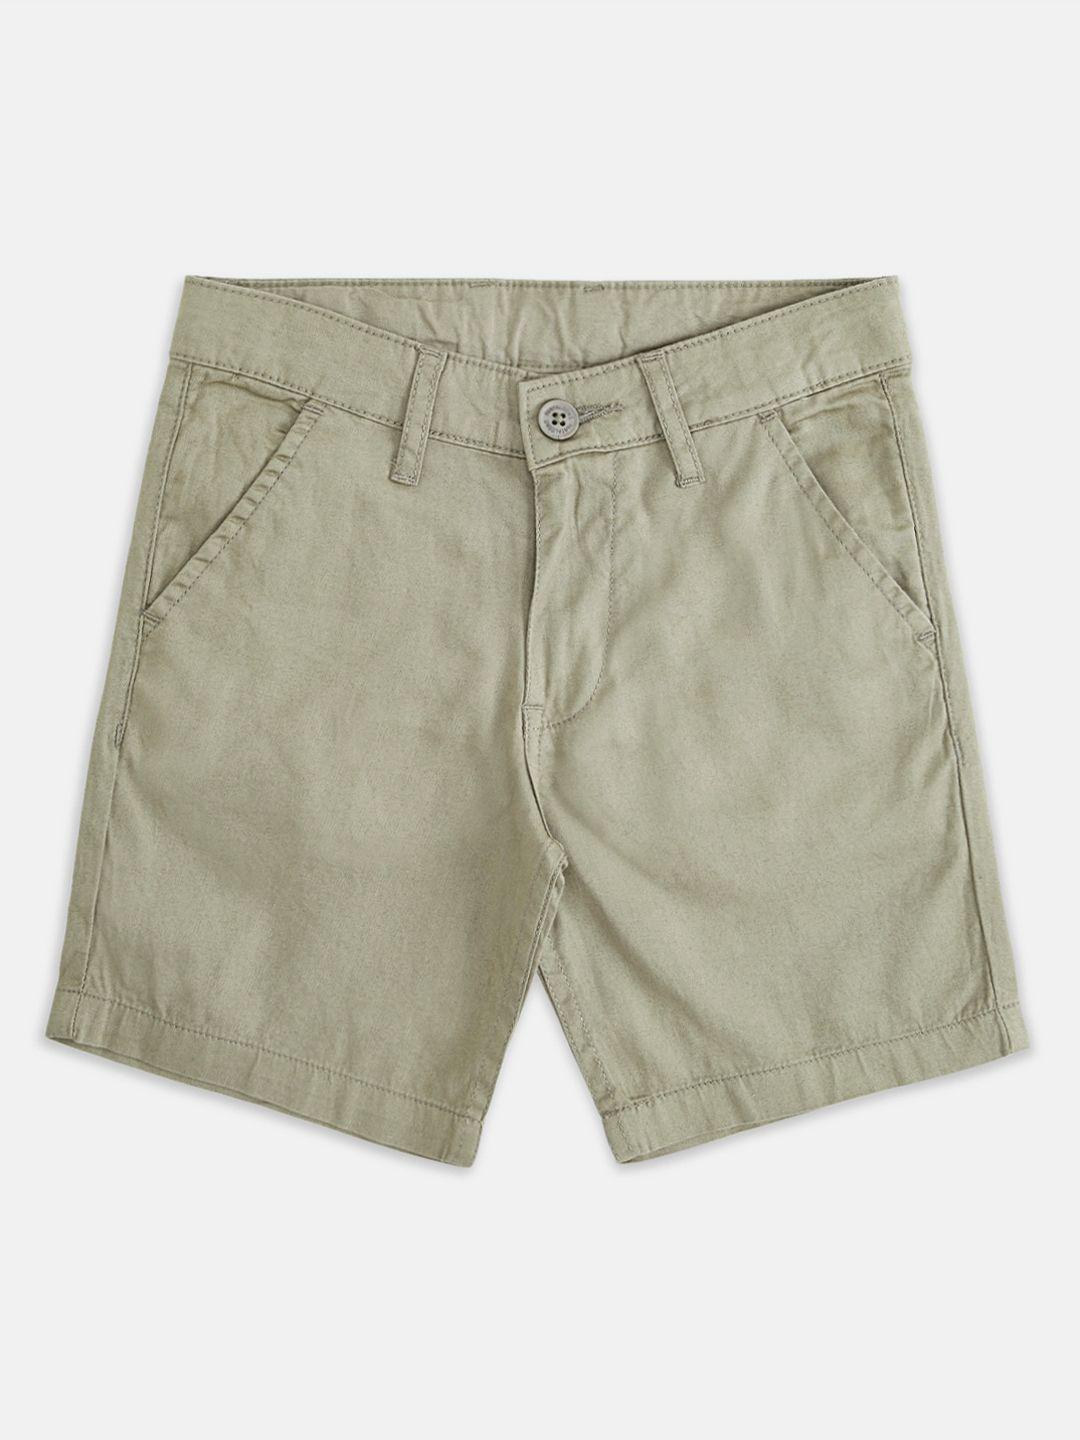 pantaloons junior boys olive green shorts